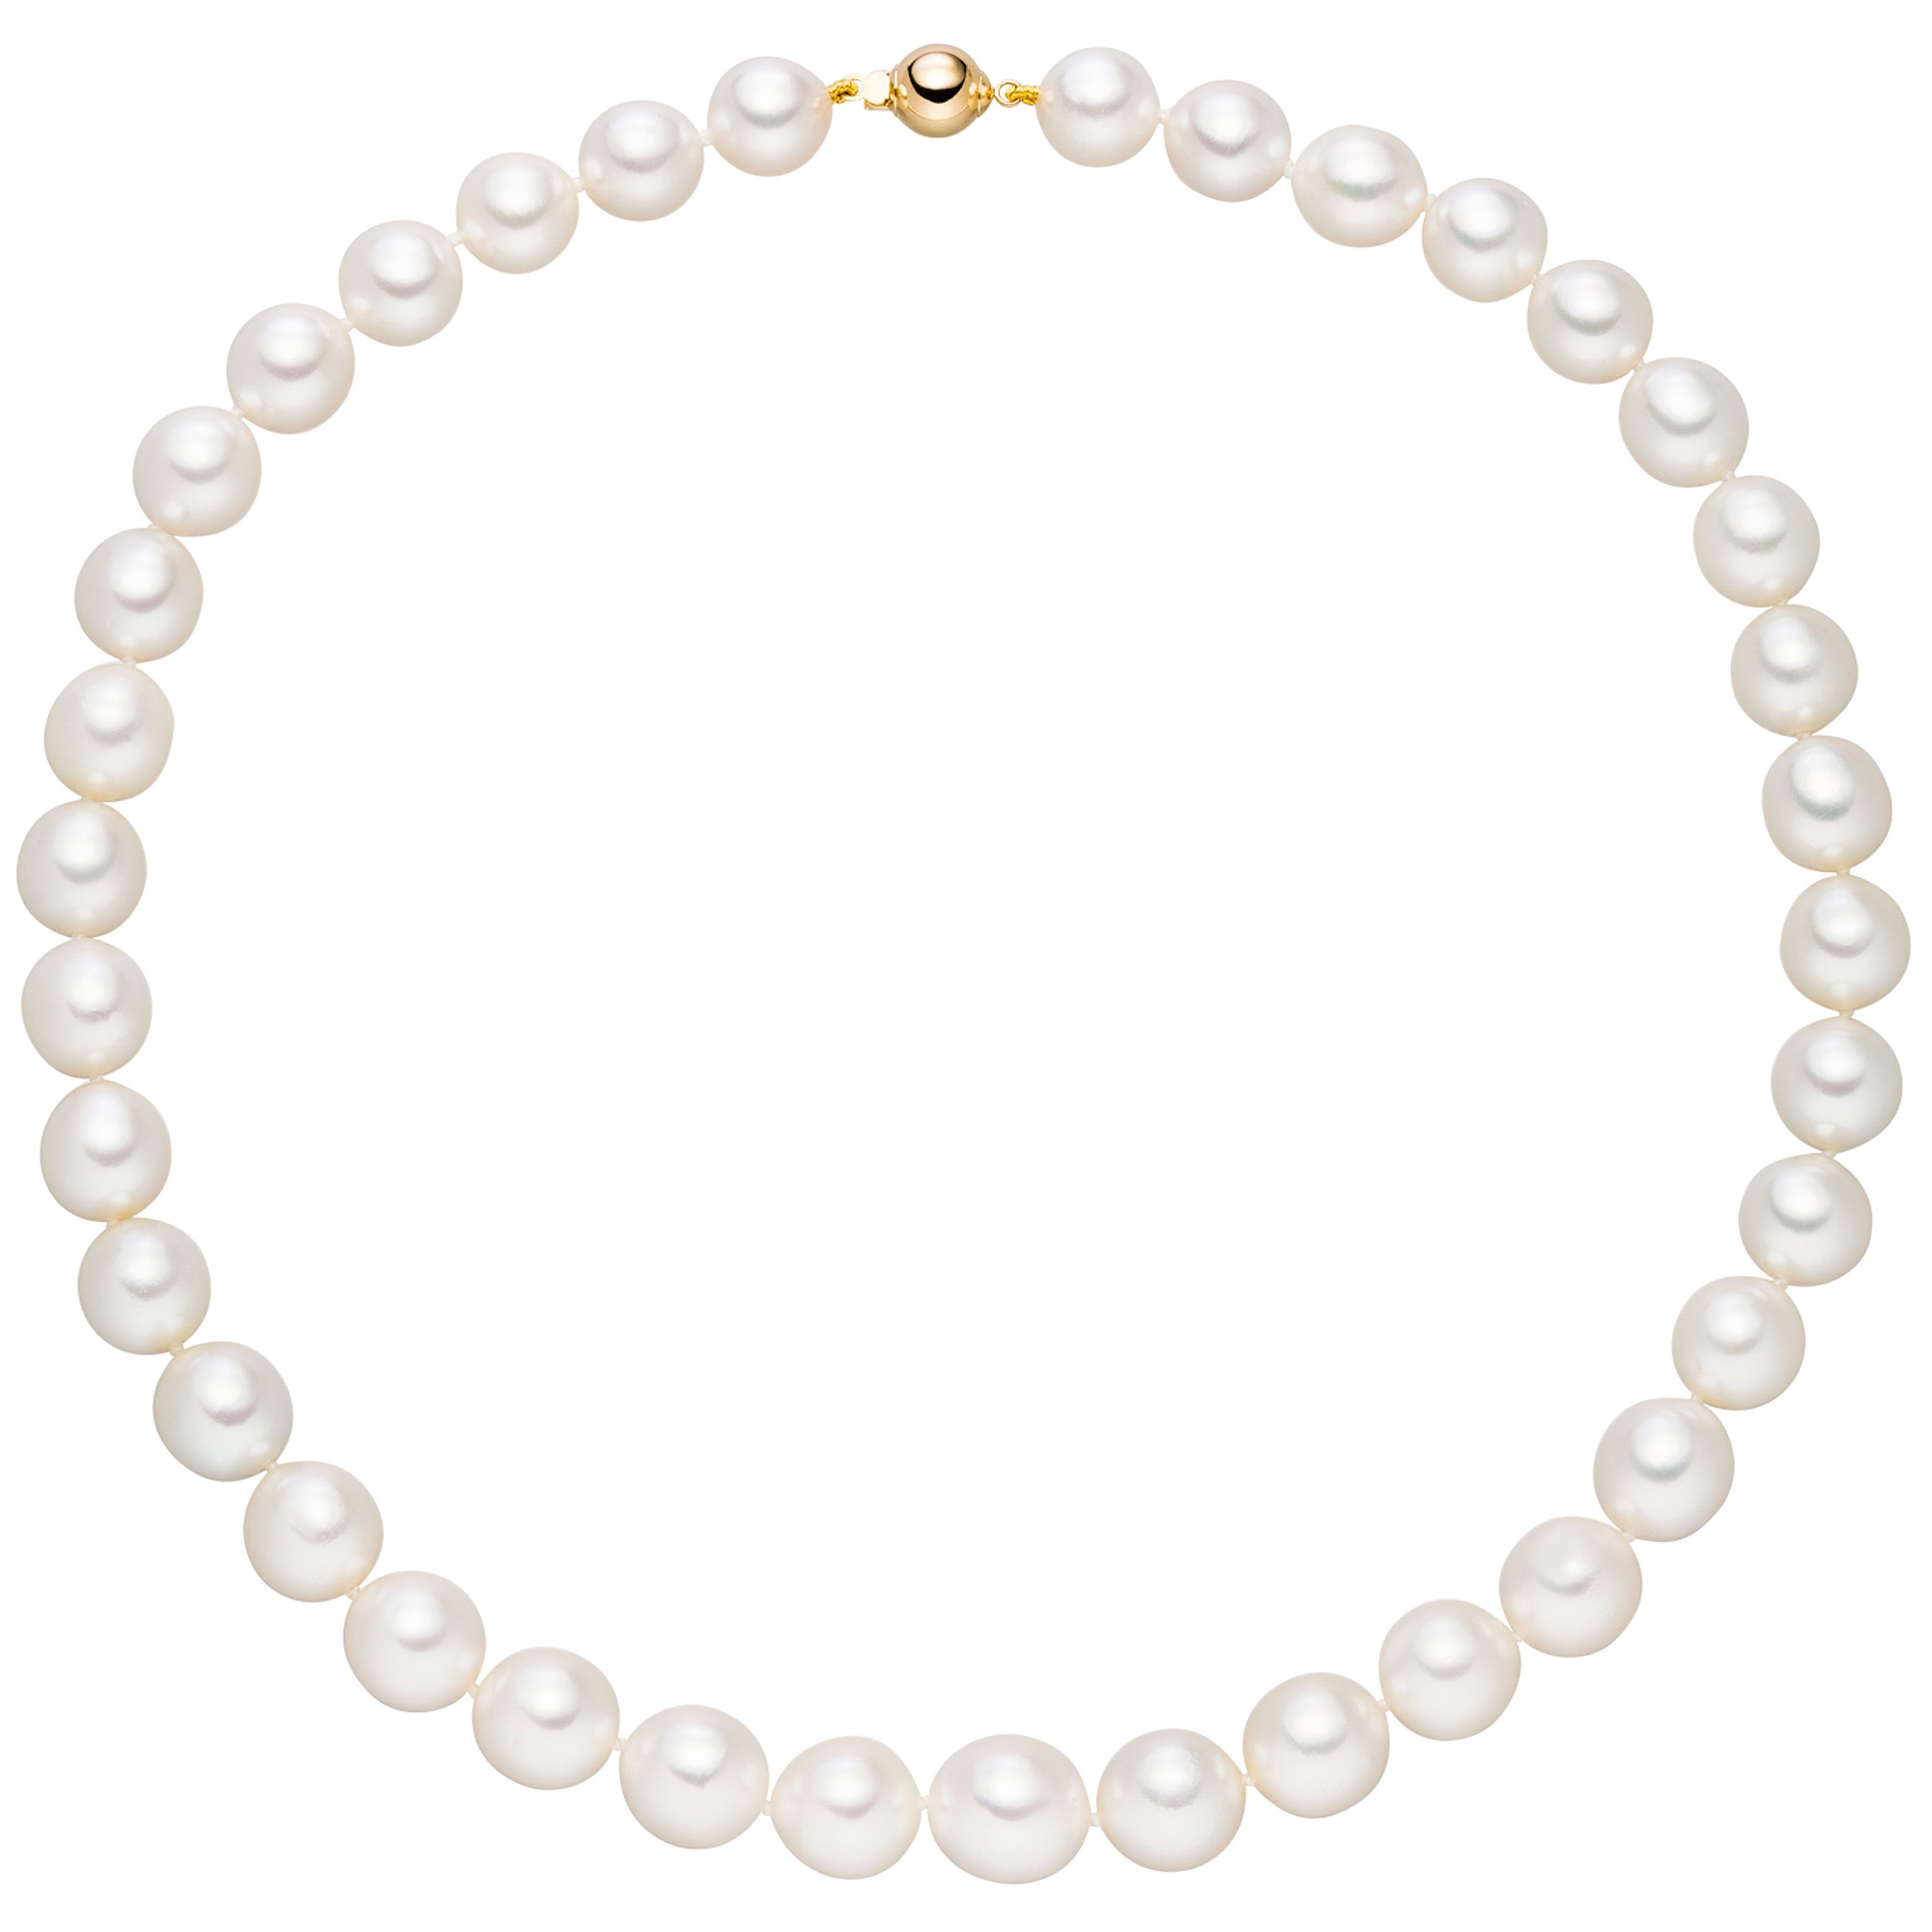 Traumringe24 - Collier Perlenkette Südsee Perlen 45 cm Verschluss 585 Gold  Halskette Kette